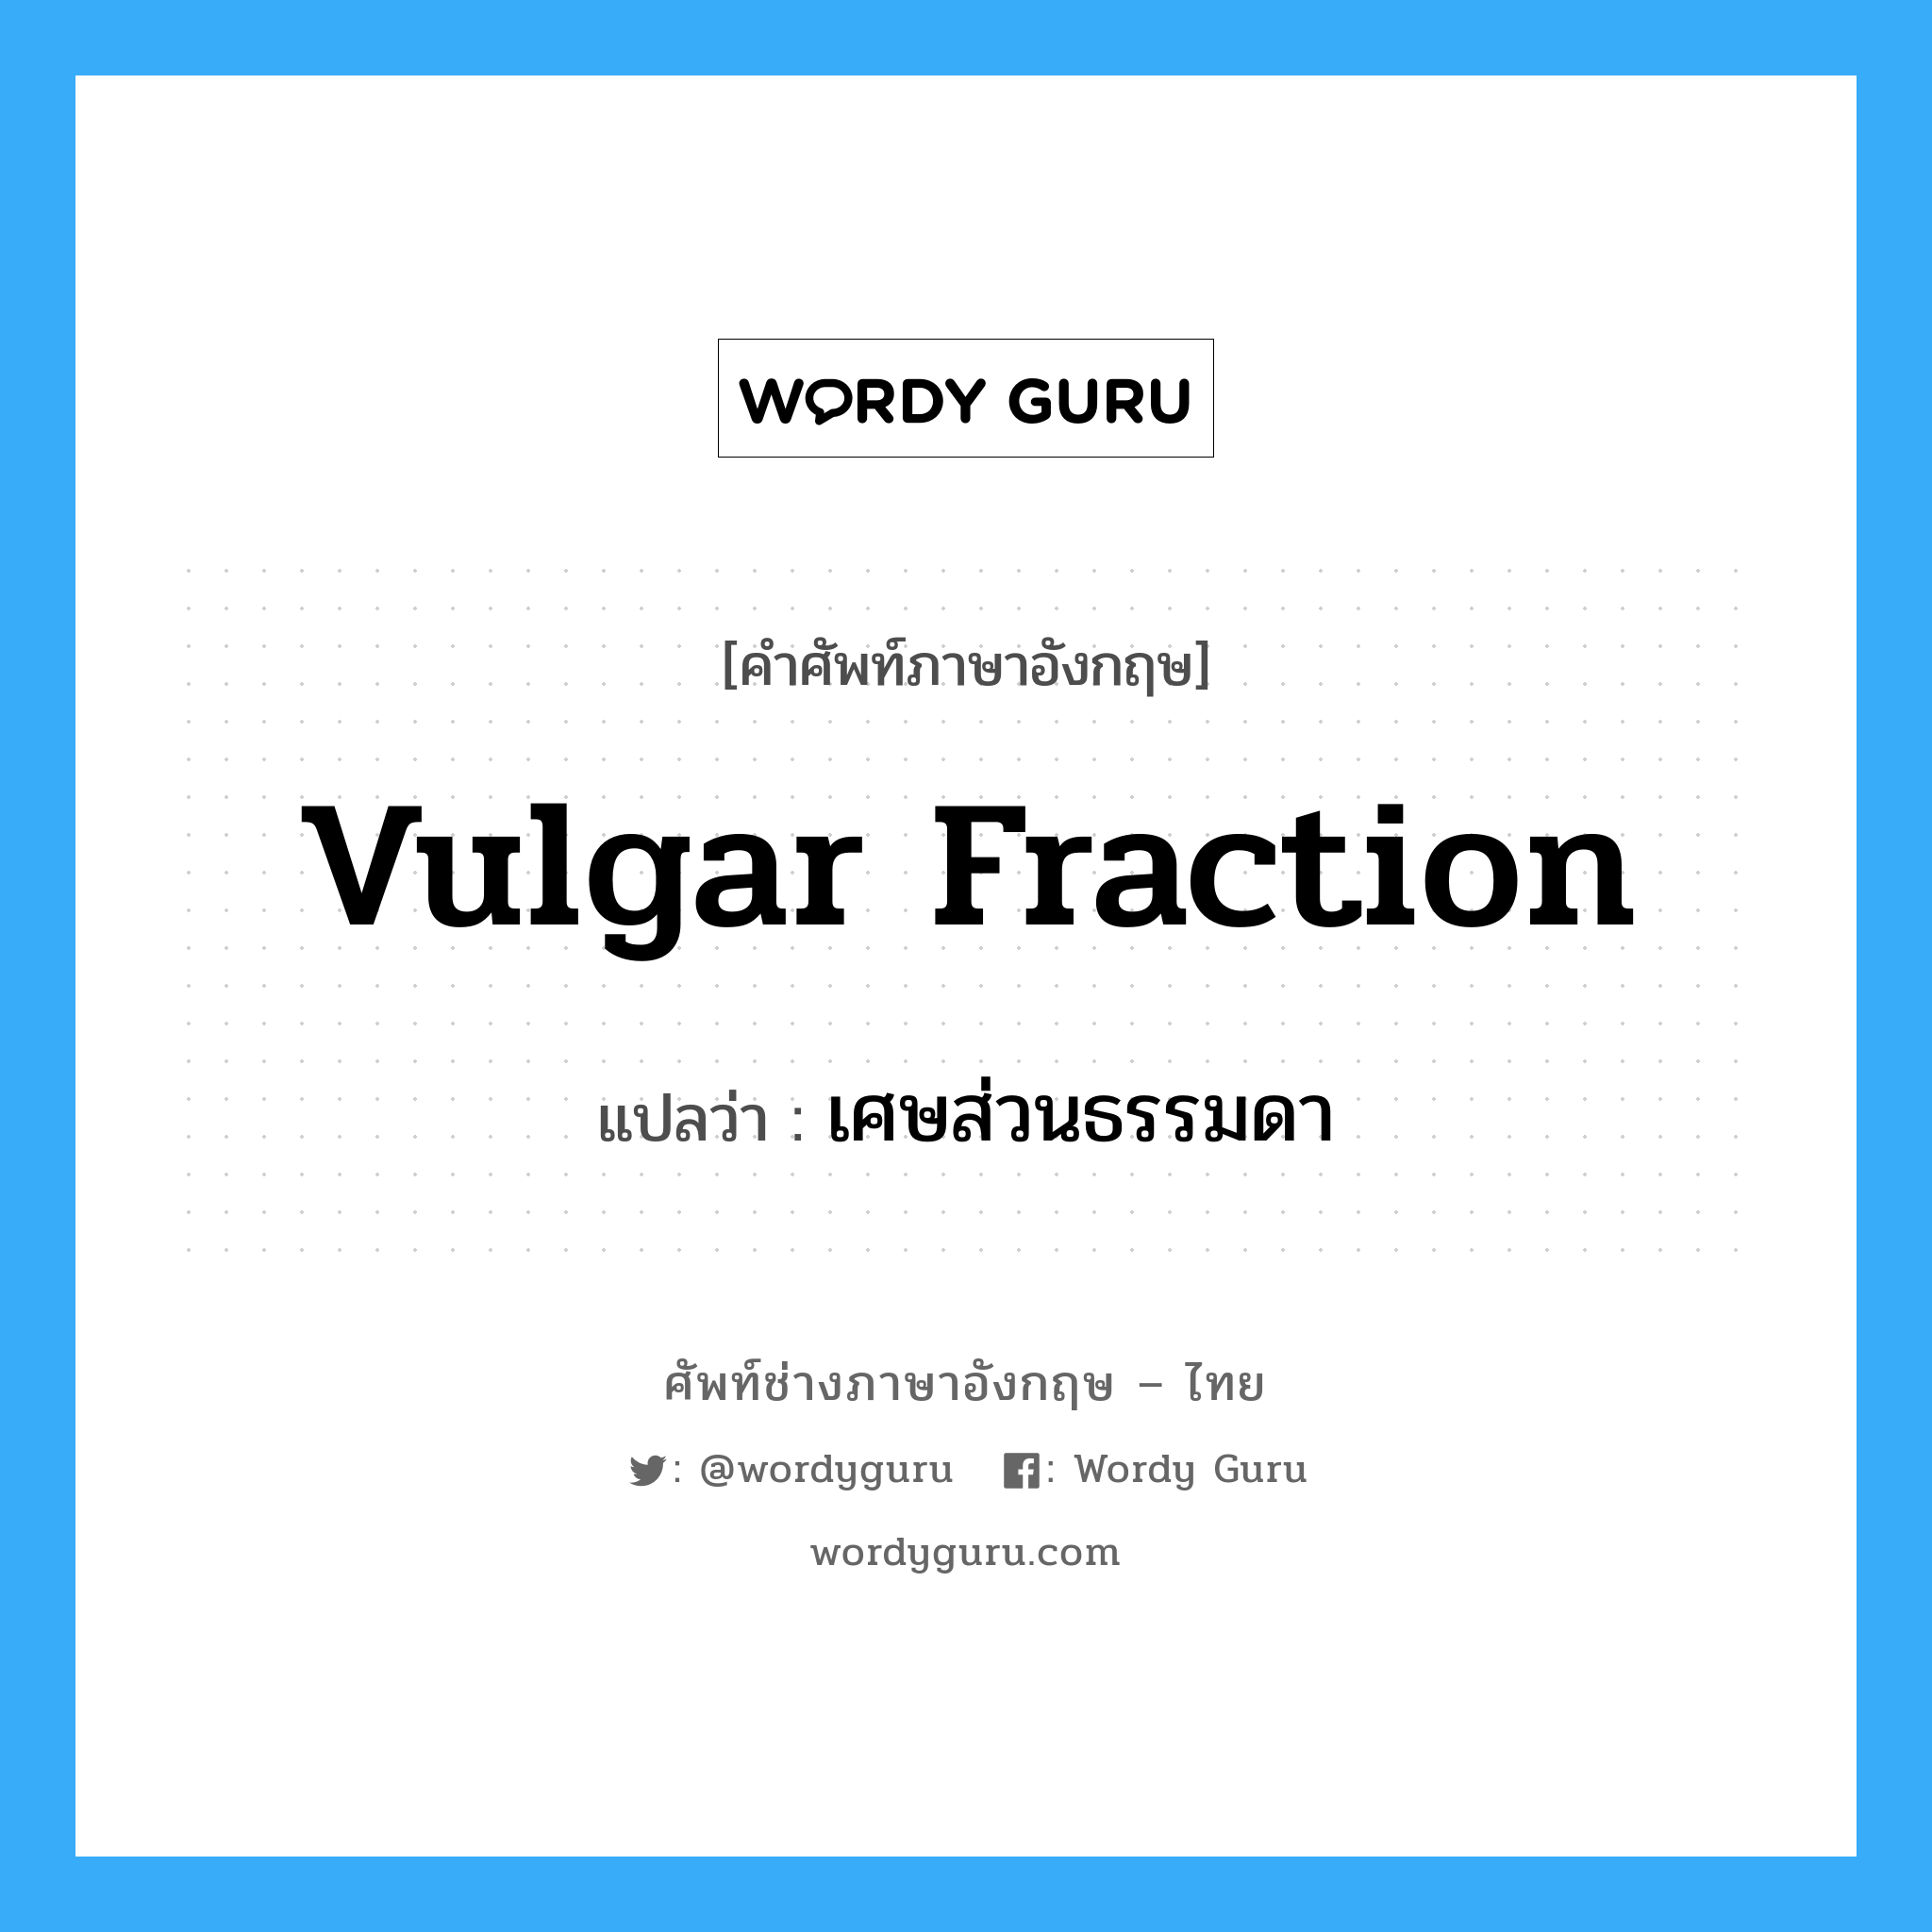 vulgar fraction แปลว่า?, คำศัพท์ช่างภาษาอังกฤษ - ไทย vulgar fraction คำศัพท์ภาษาอังกฤษ vulgar fraction แปลว่า เศษส่วนธรรมดา